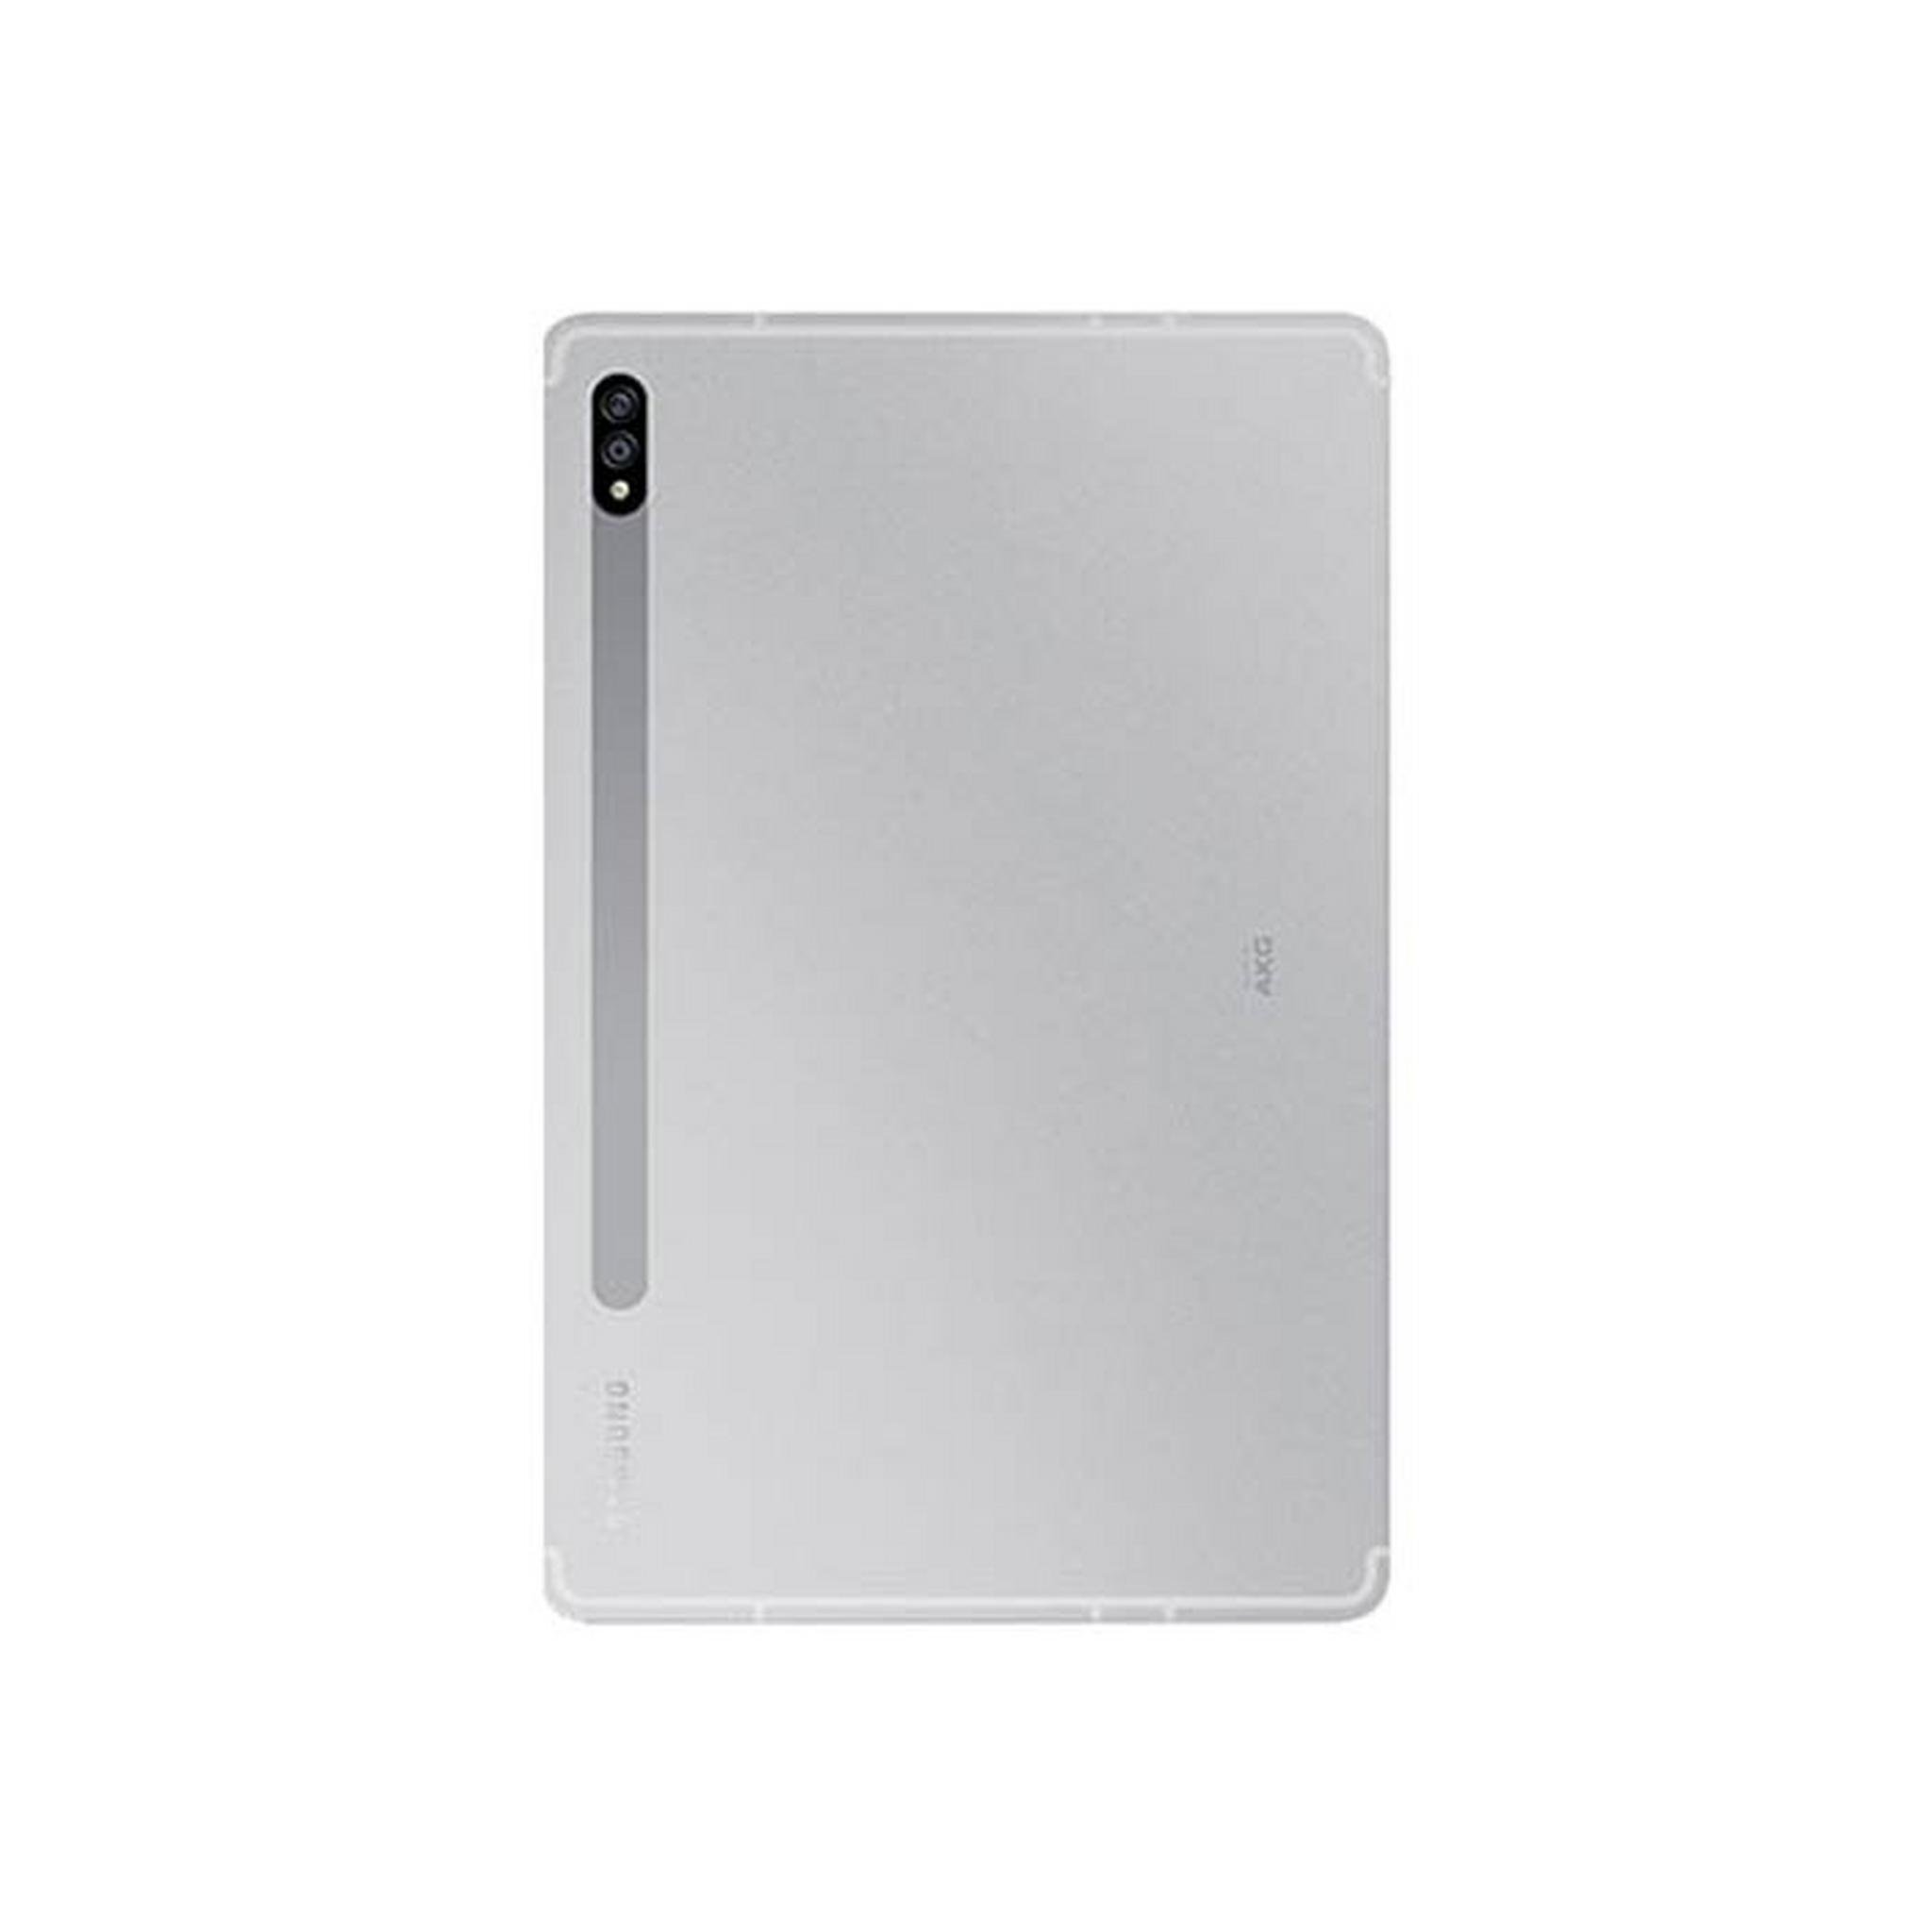 Samsung Galaxy Tab S7+ WiFi 256GB - Silver